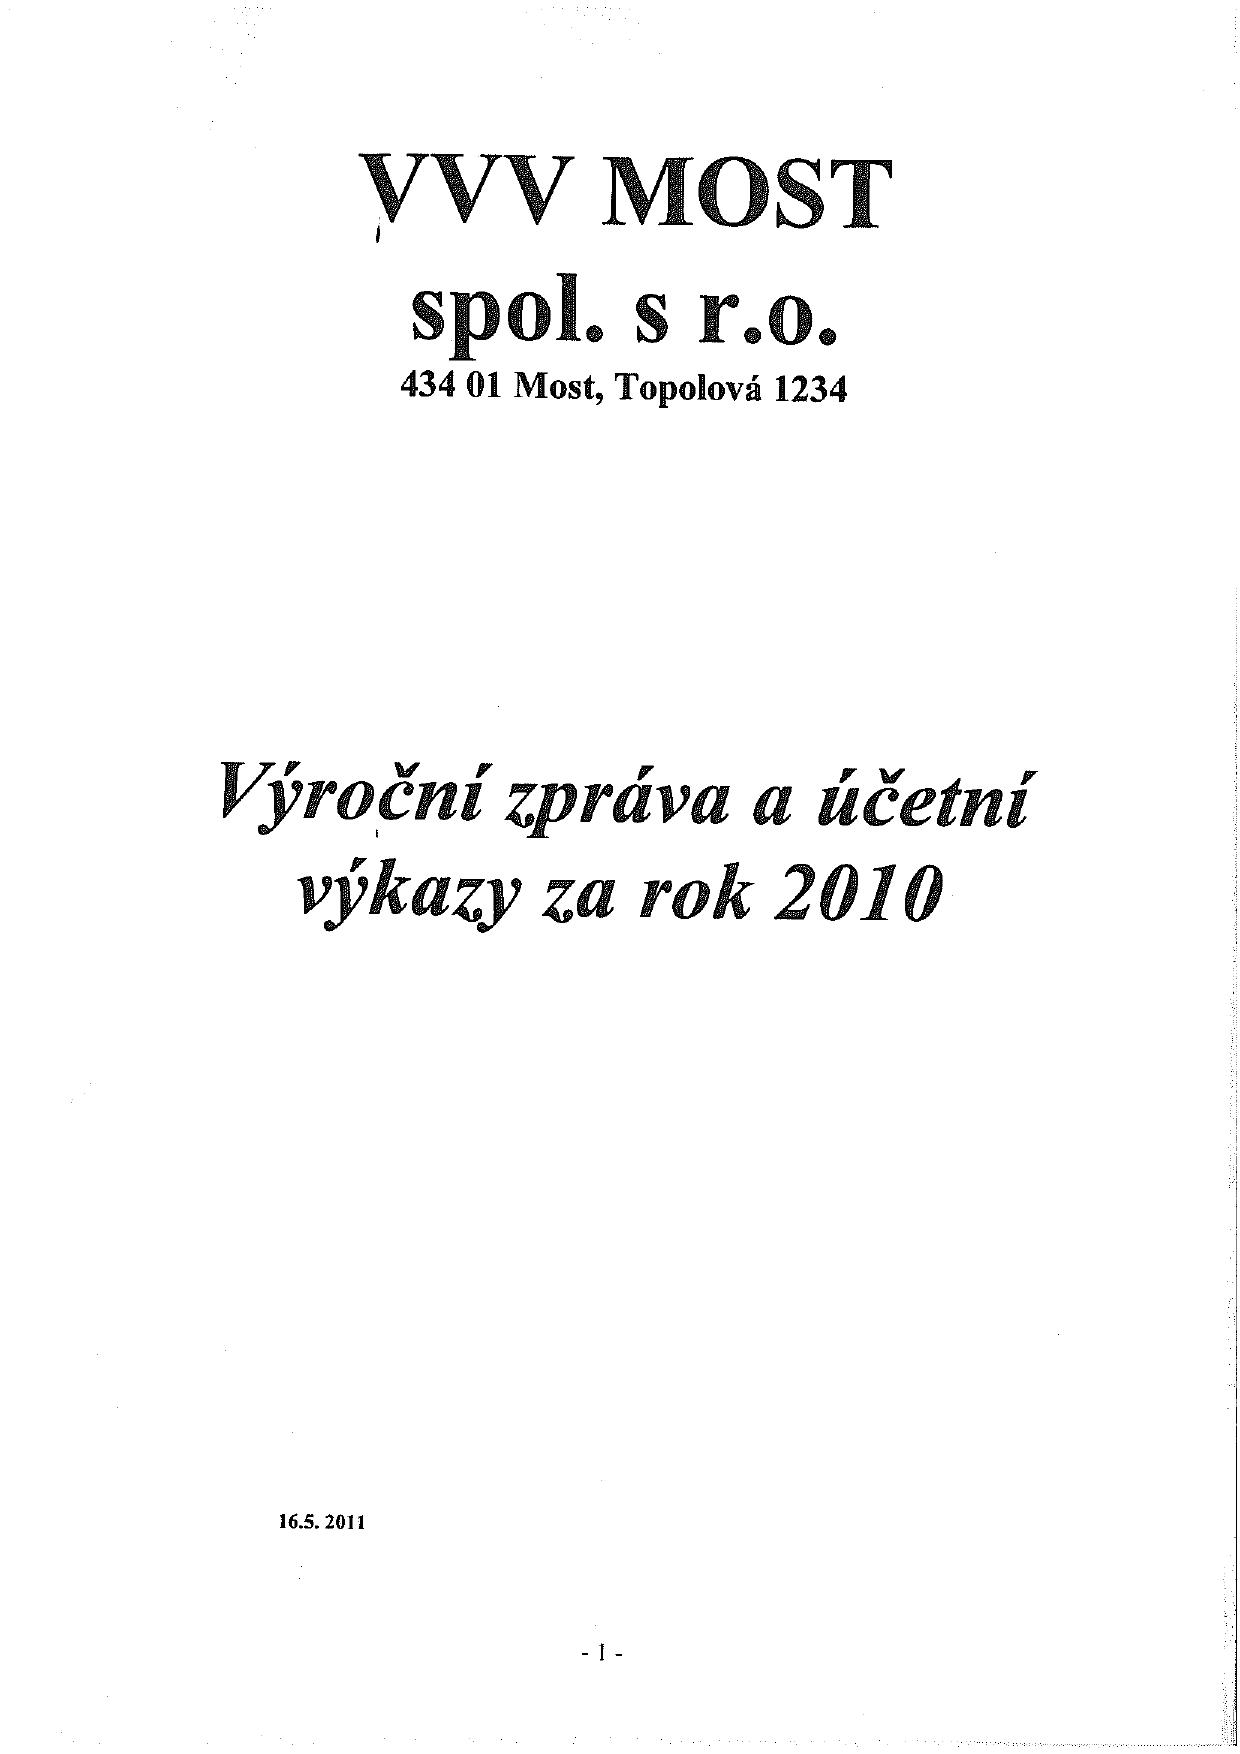 VVVMOST Annual Report